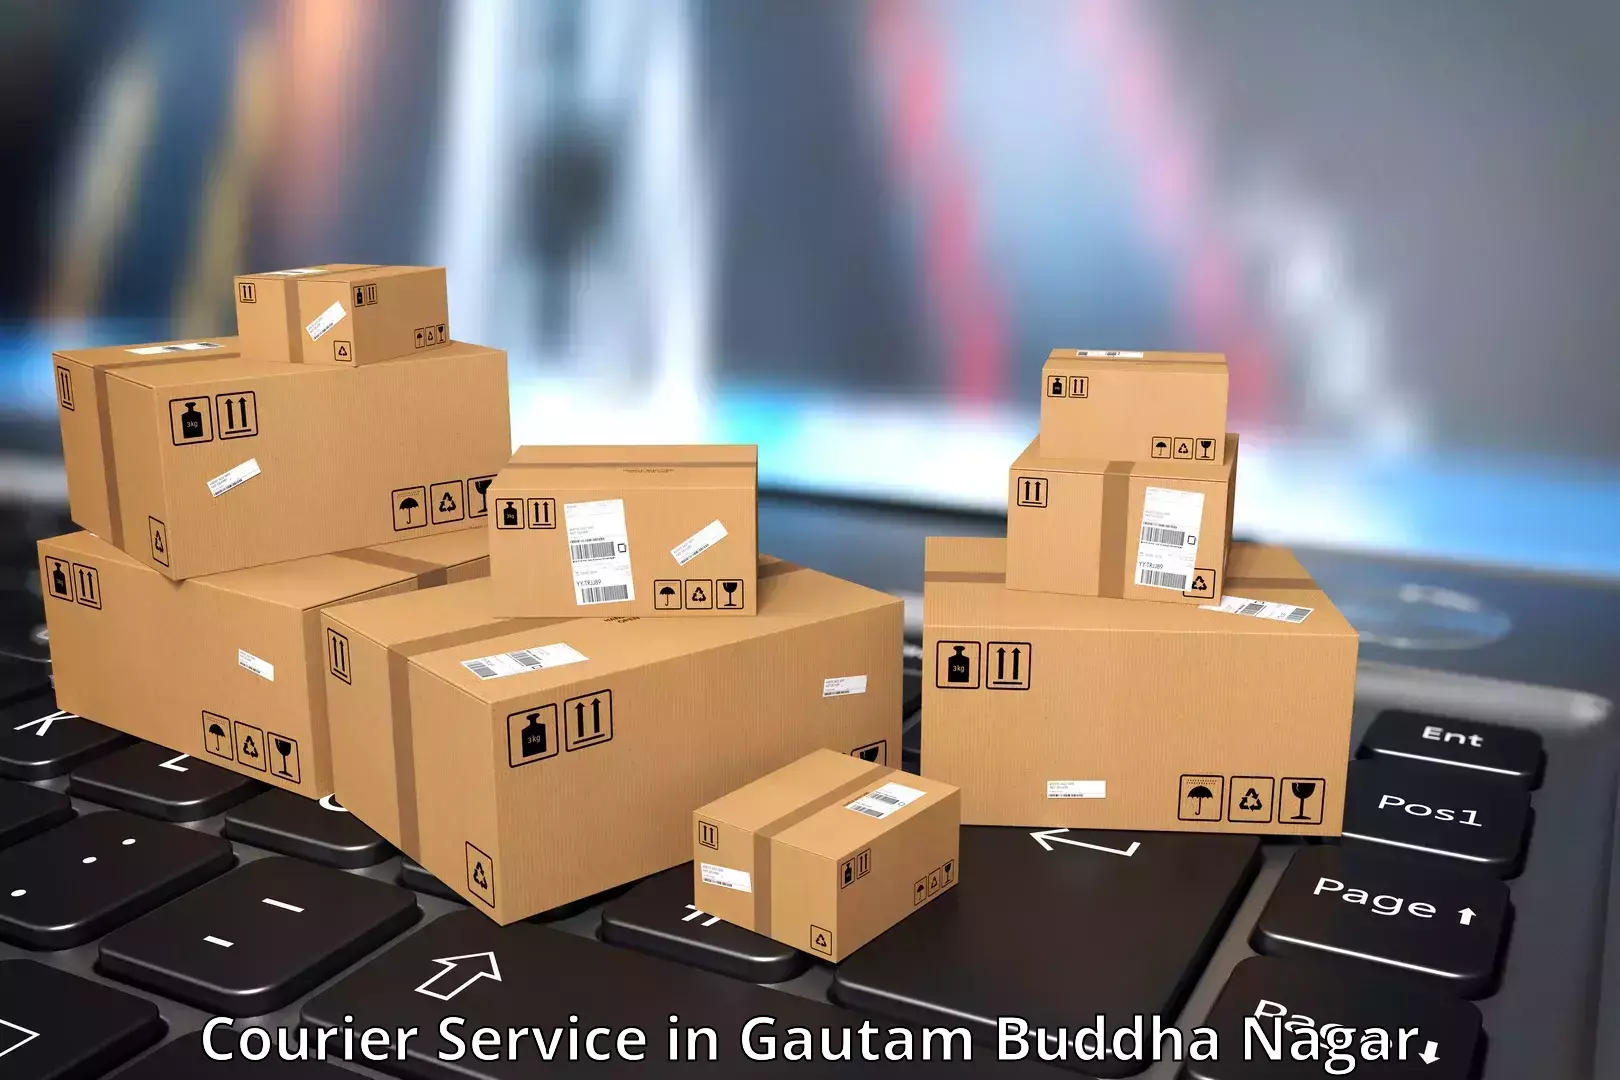 Customized shipping options in Gautam Buddha Nagar